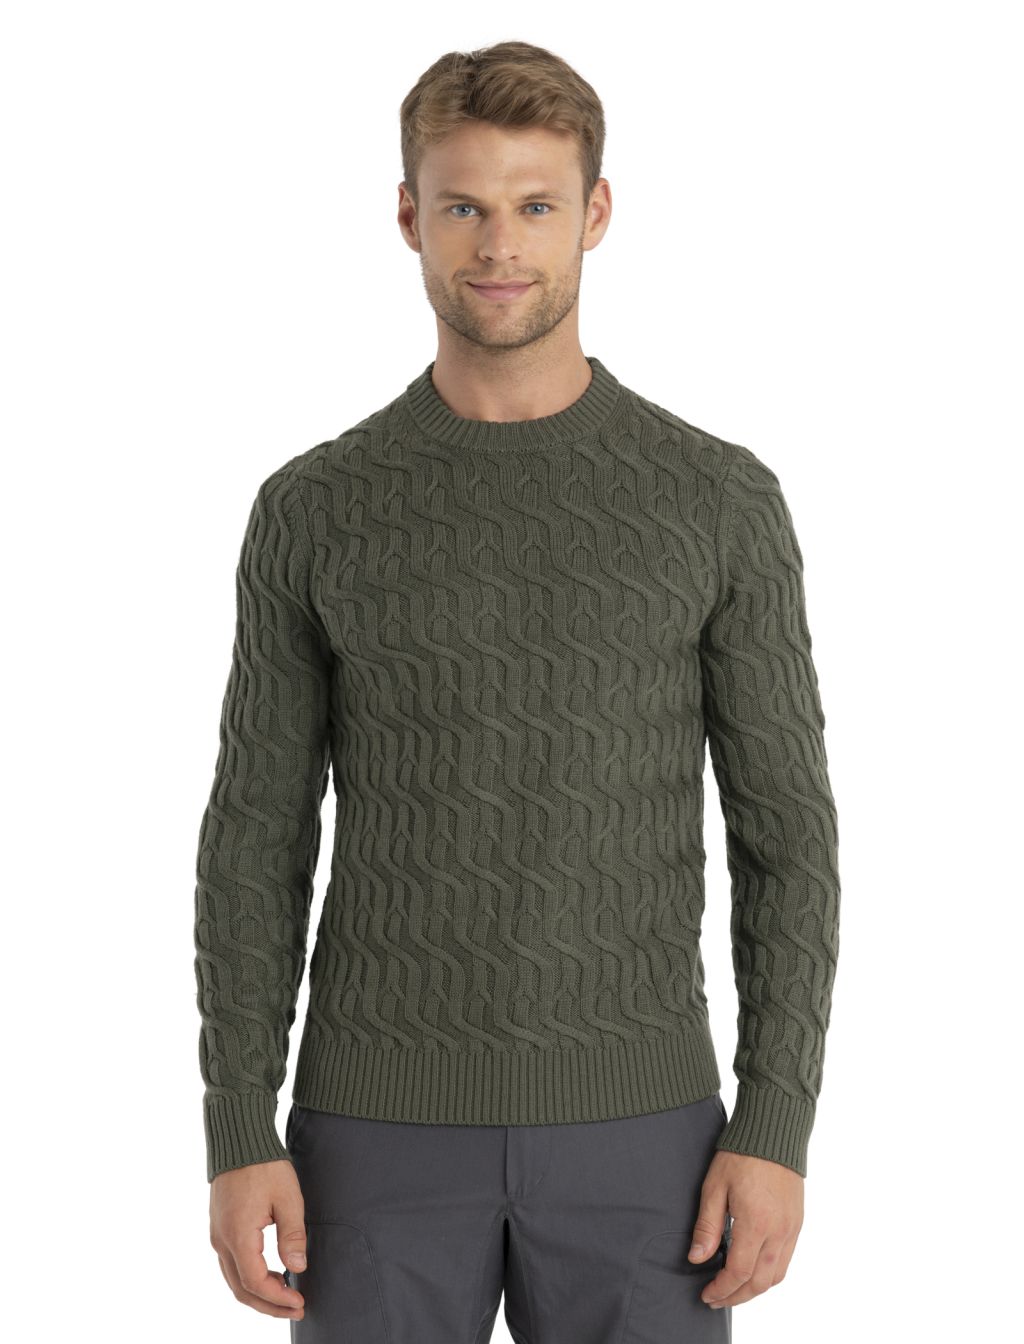 Pánský merino svetr ICEBREAKER Mens Merino Cable Knit Crewe Sweater, Loden velikost: S